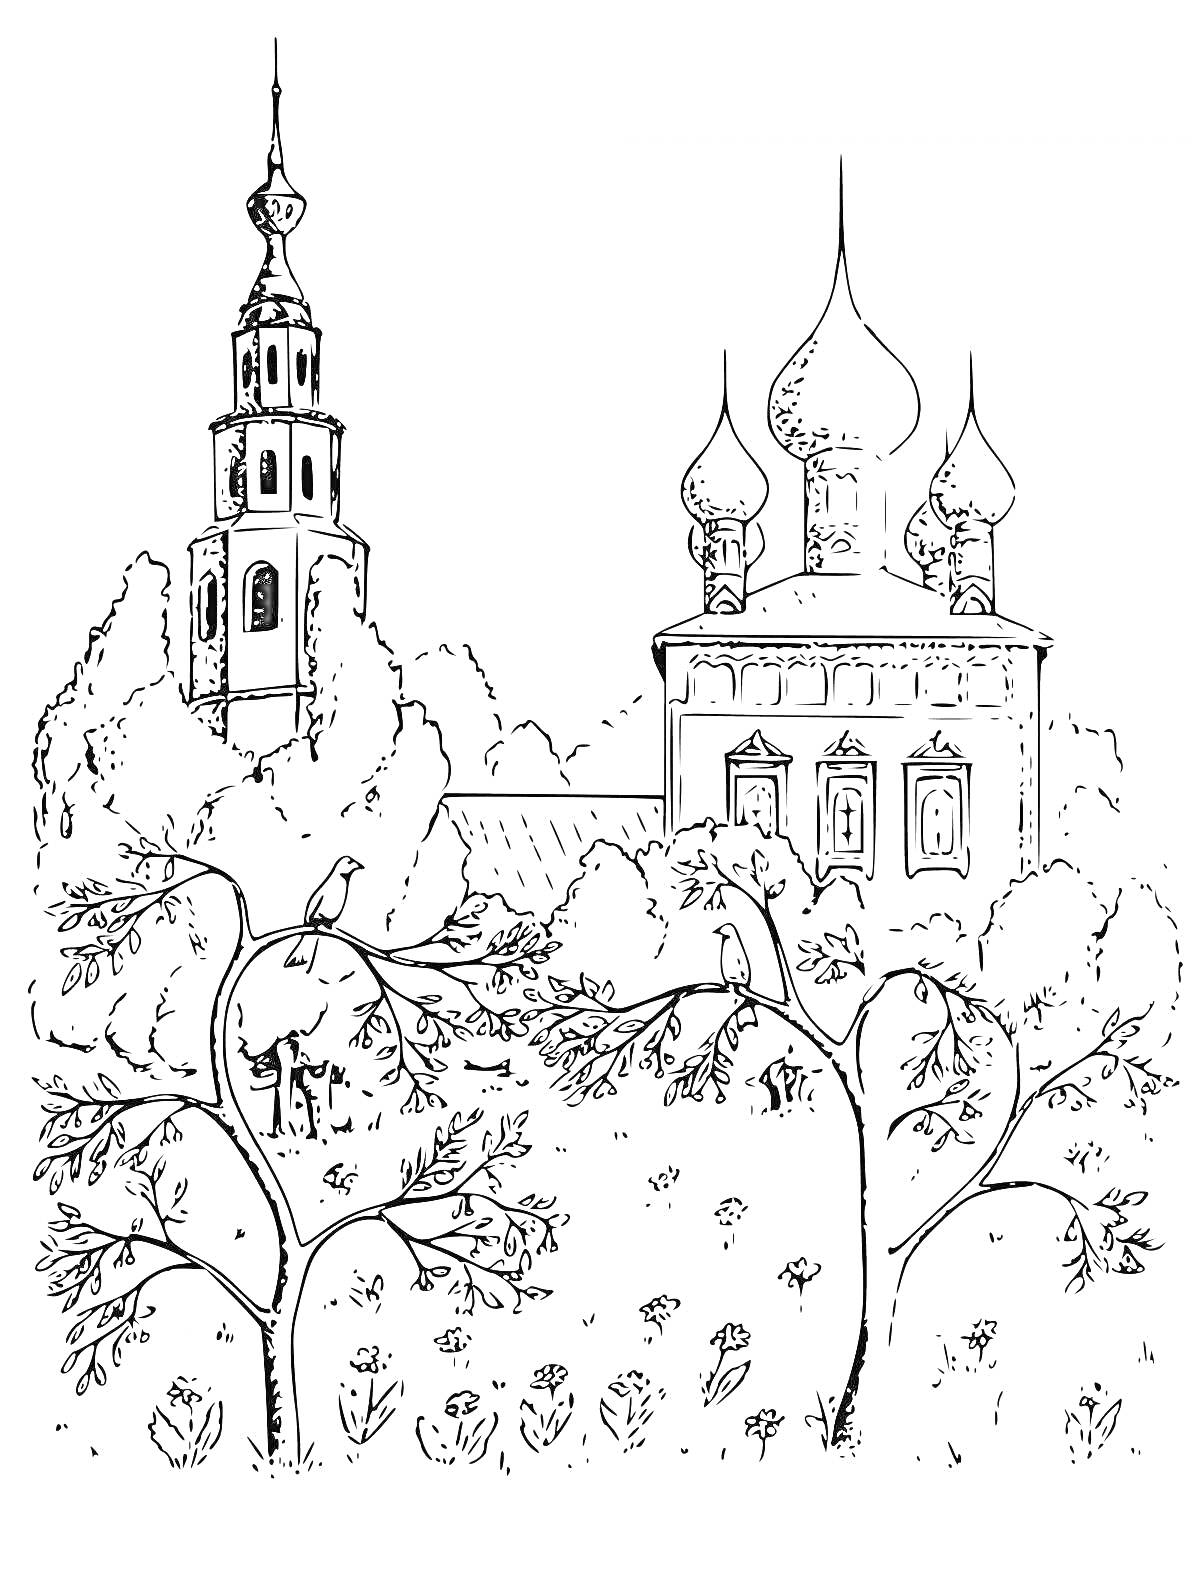 Раскраска Церковь с куполами, колокольней и деревьями на переднем плане